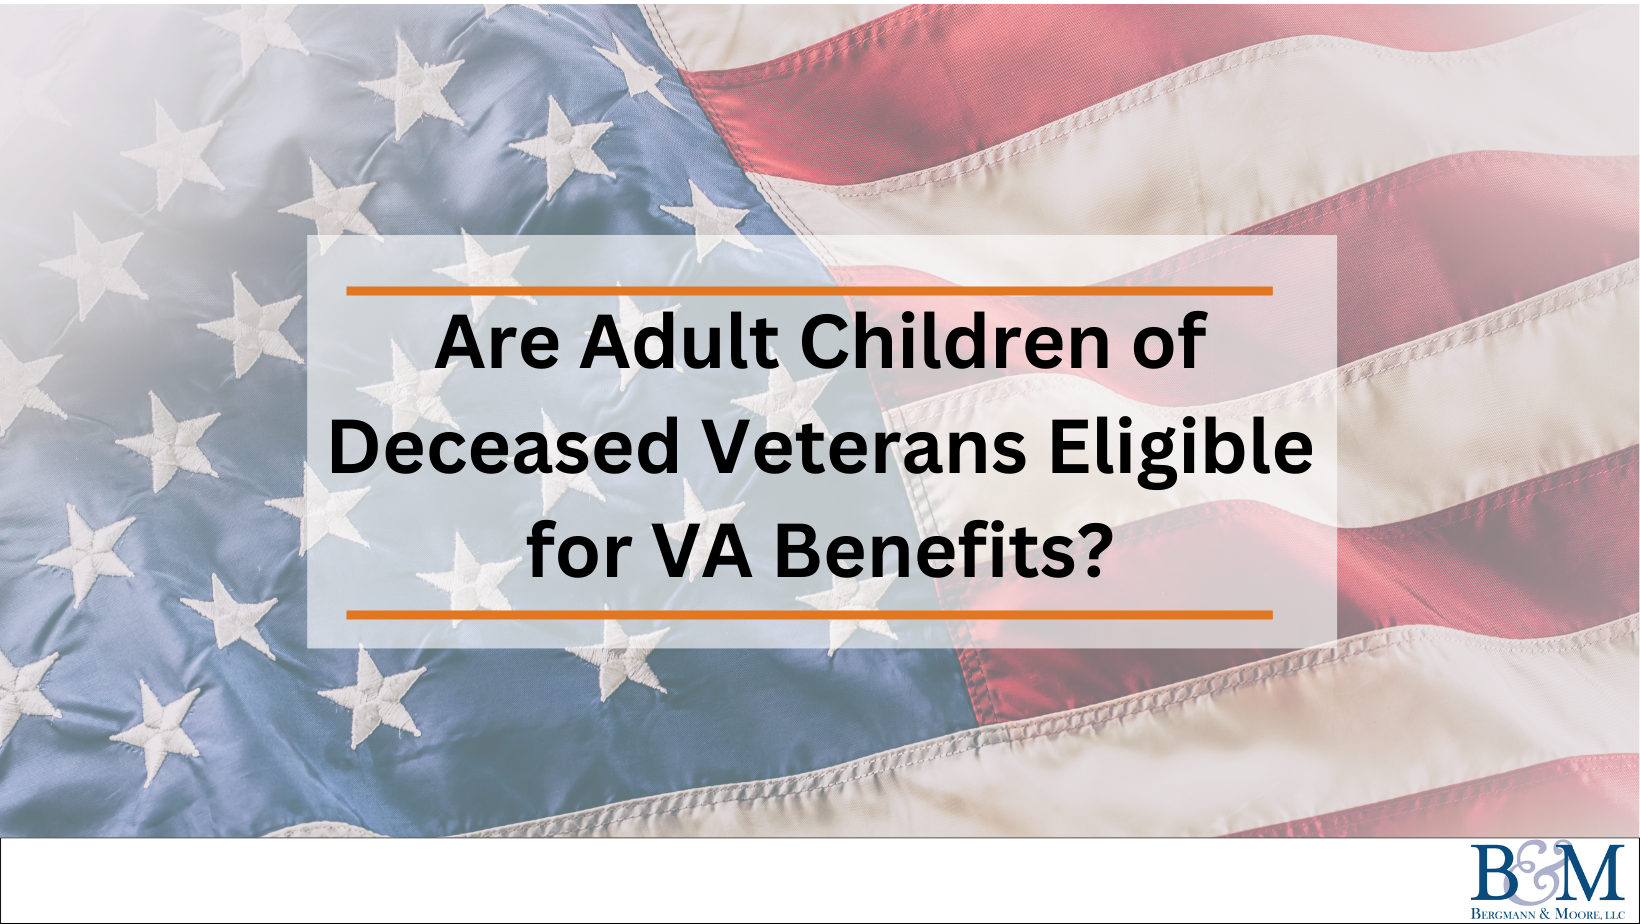 Are Adult Children of Deceased Veterans Eligible for VA Benefits?